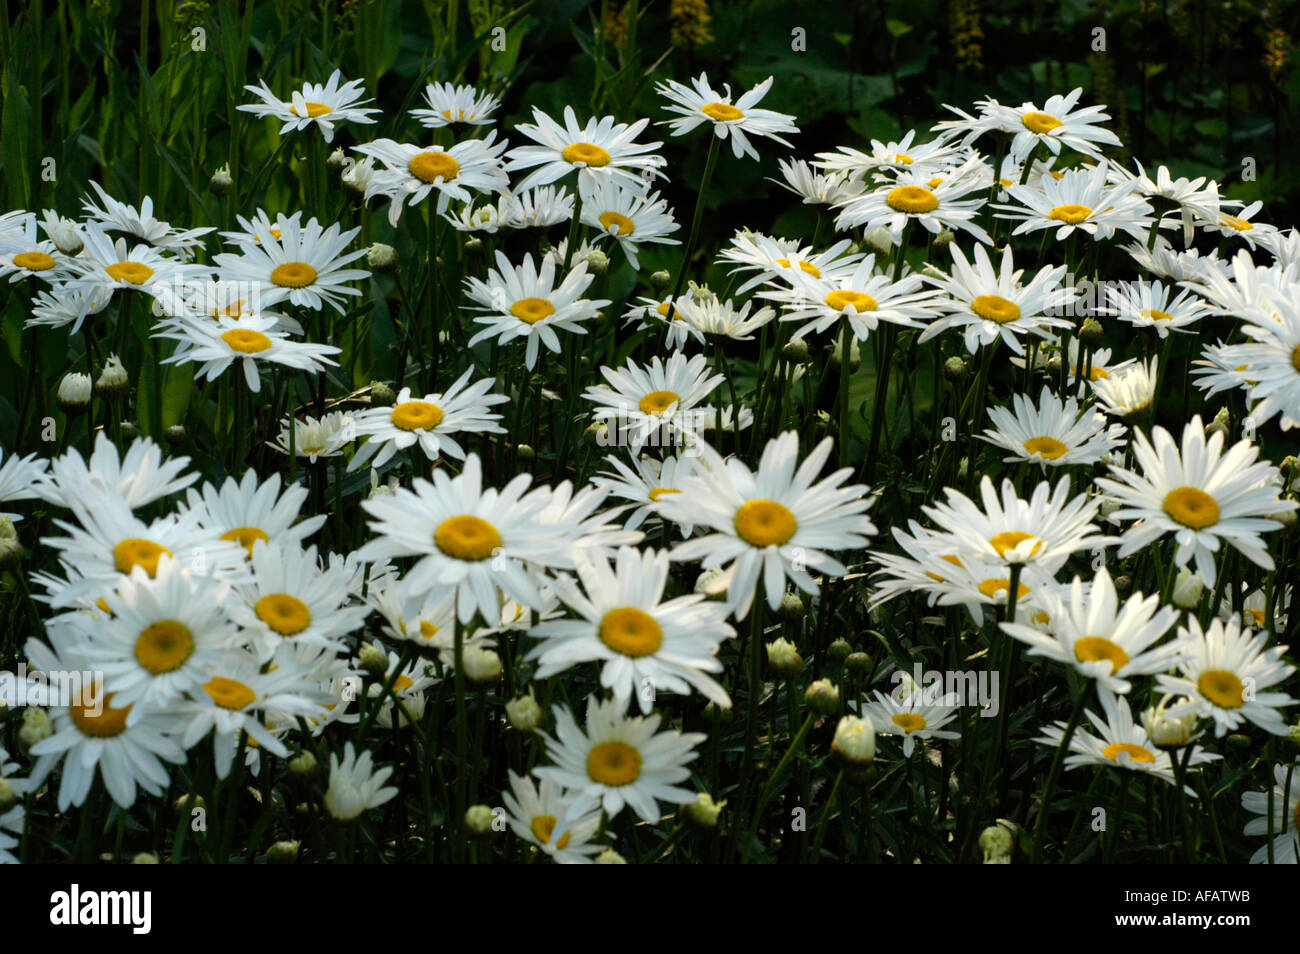 White flowers of max chrysanthemum or Chrysanthemum maximum or Shasta daisy Compositae Leucanthemum maximum Europe Stock Photo